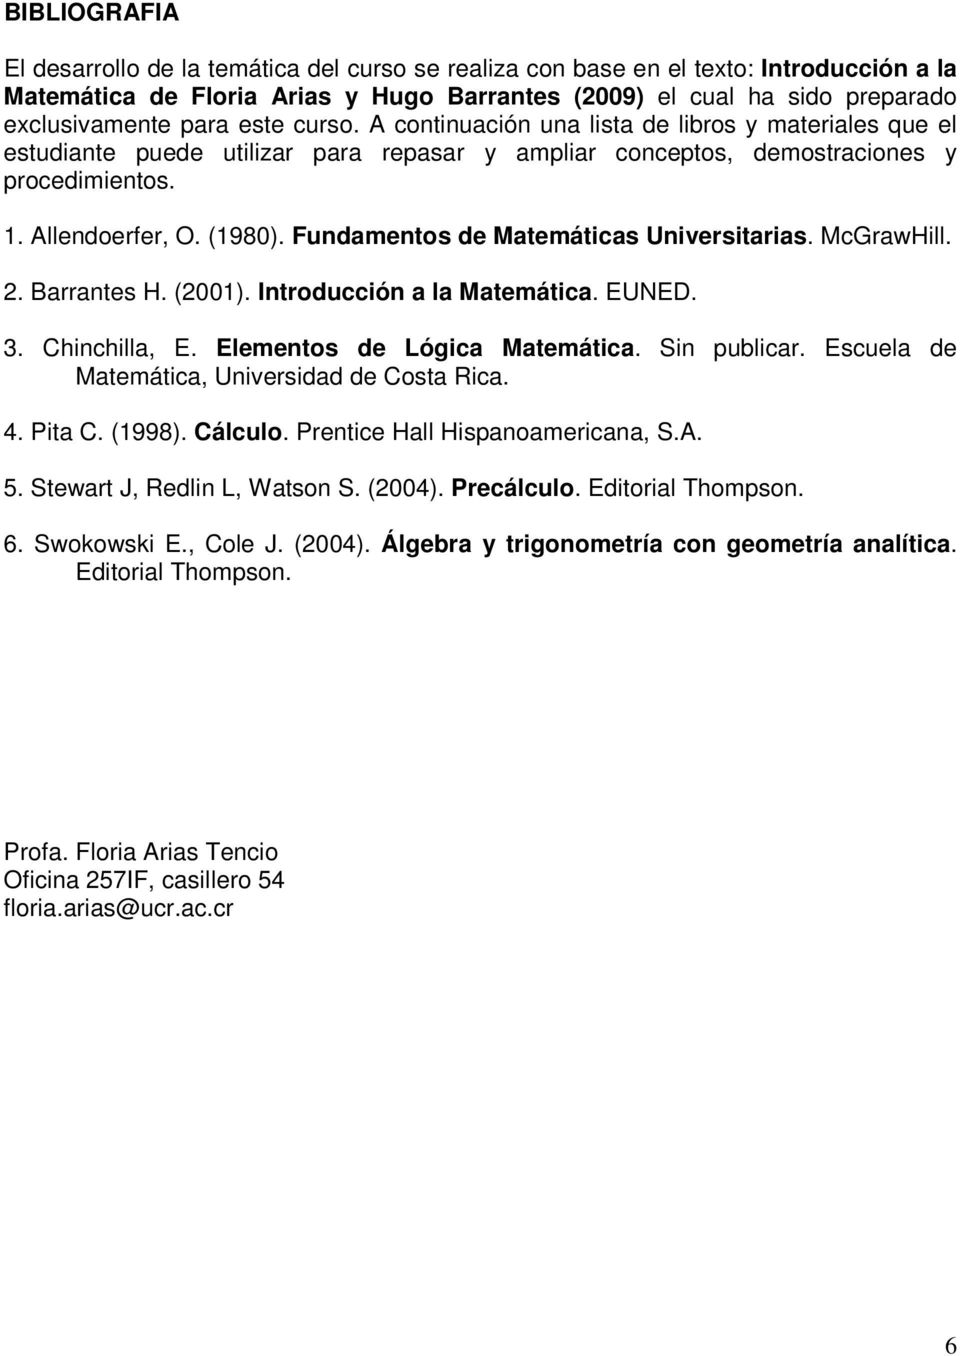 Fundamentos de Matemáticas Universitarias. McGrawHill. 2. Barrantes H. (2001). Introducción a la Matemática. EUNED. 3. Chinchilla, E. Elementos de Lógica Matemática. Sin publicar.